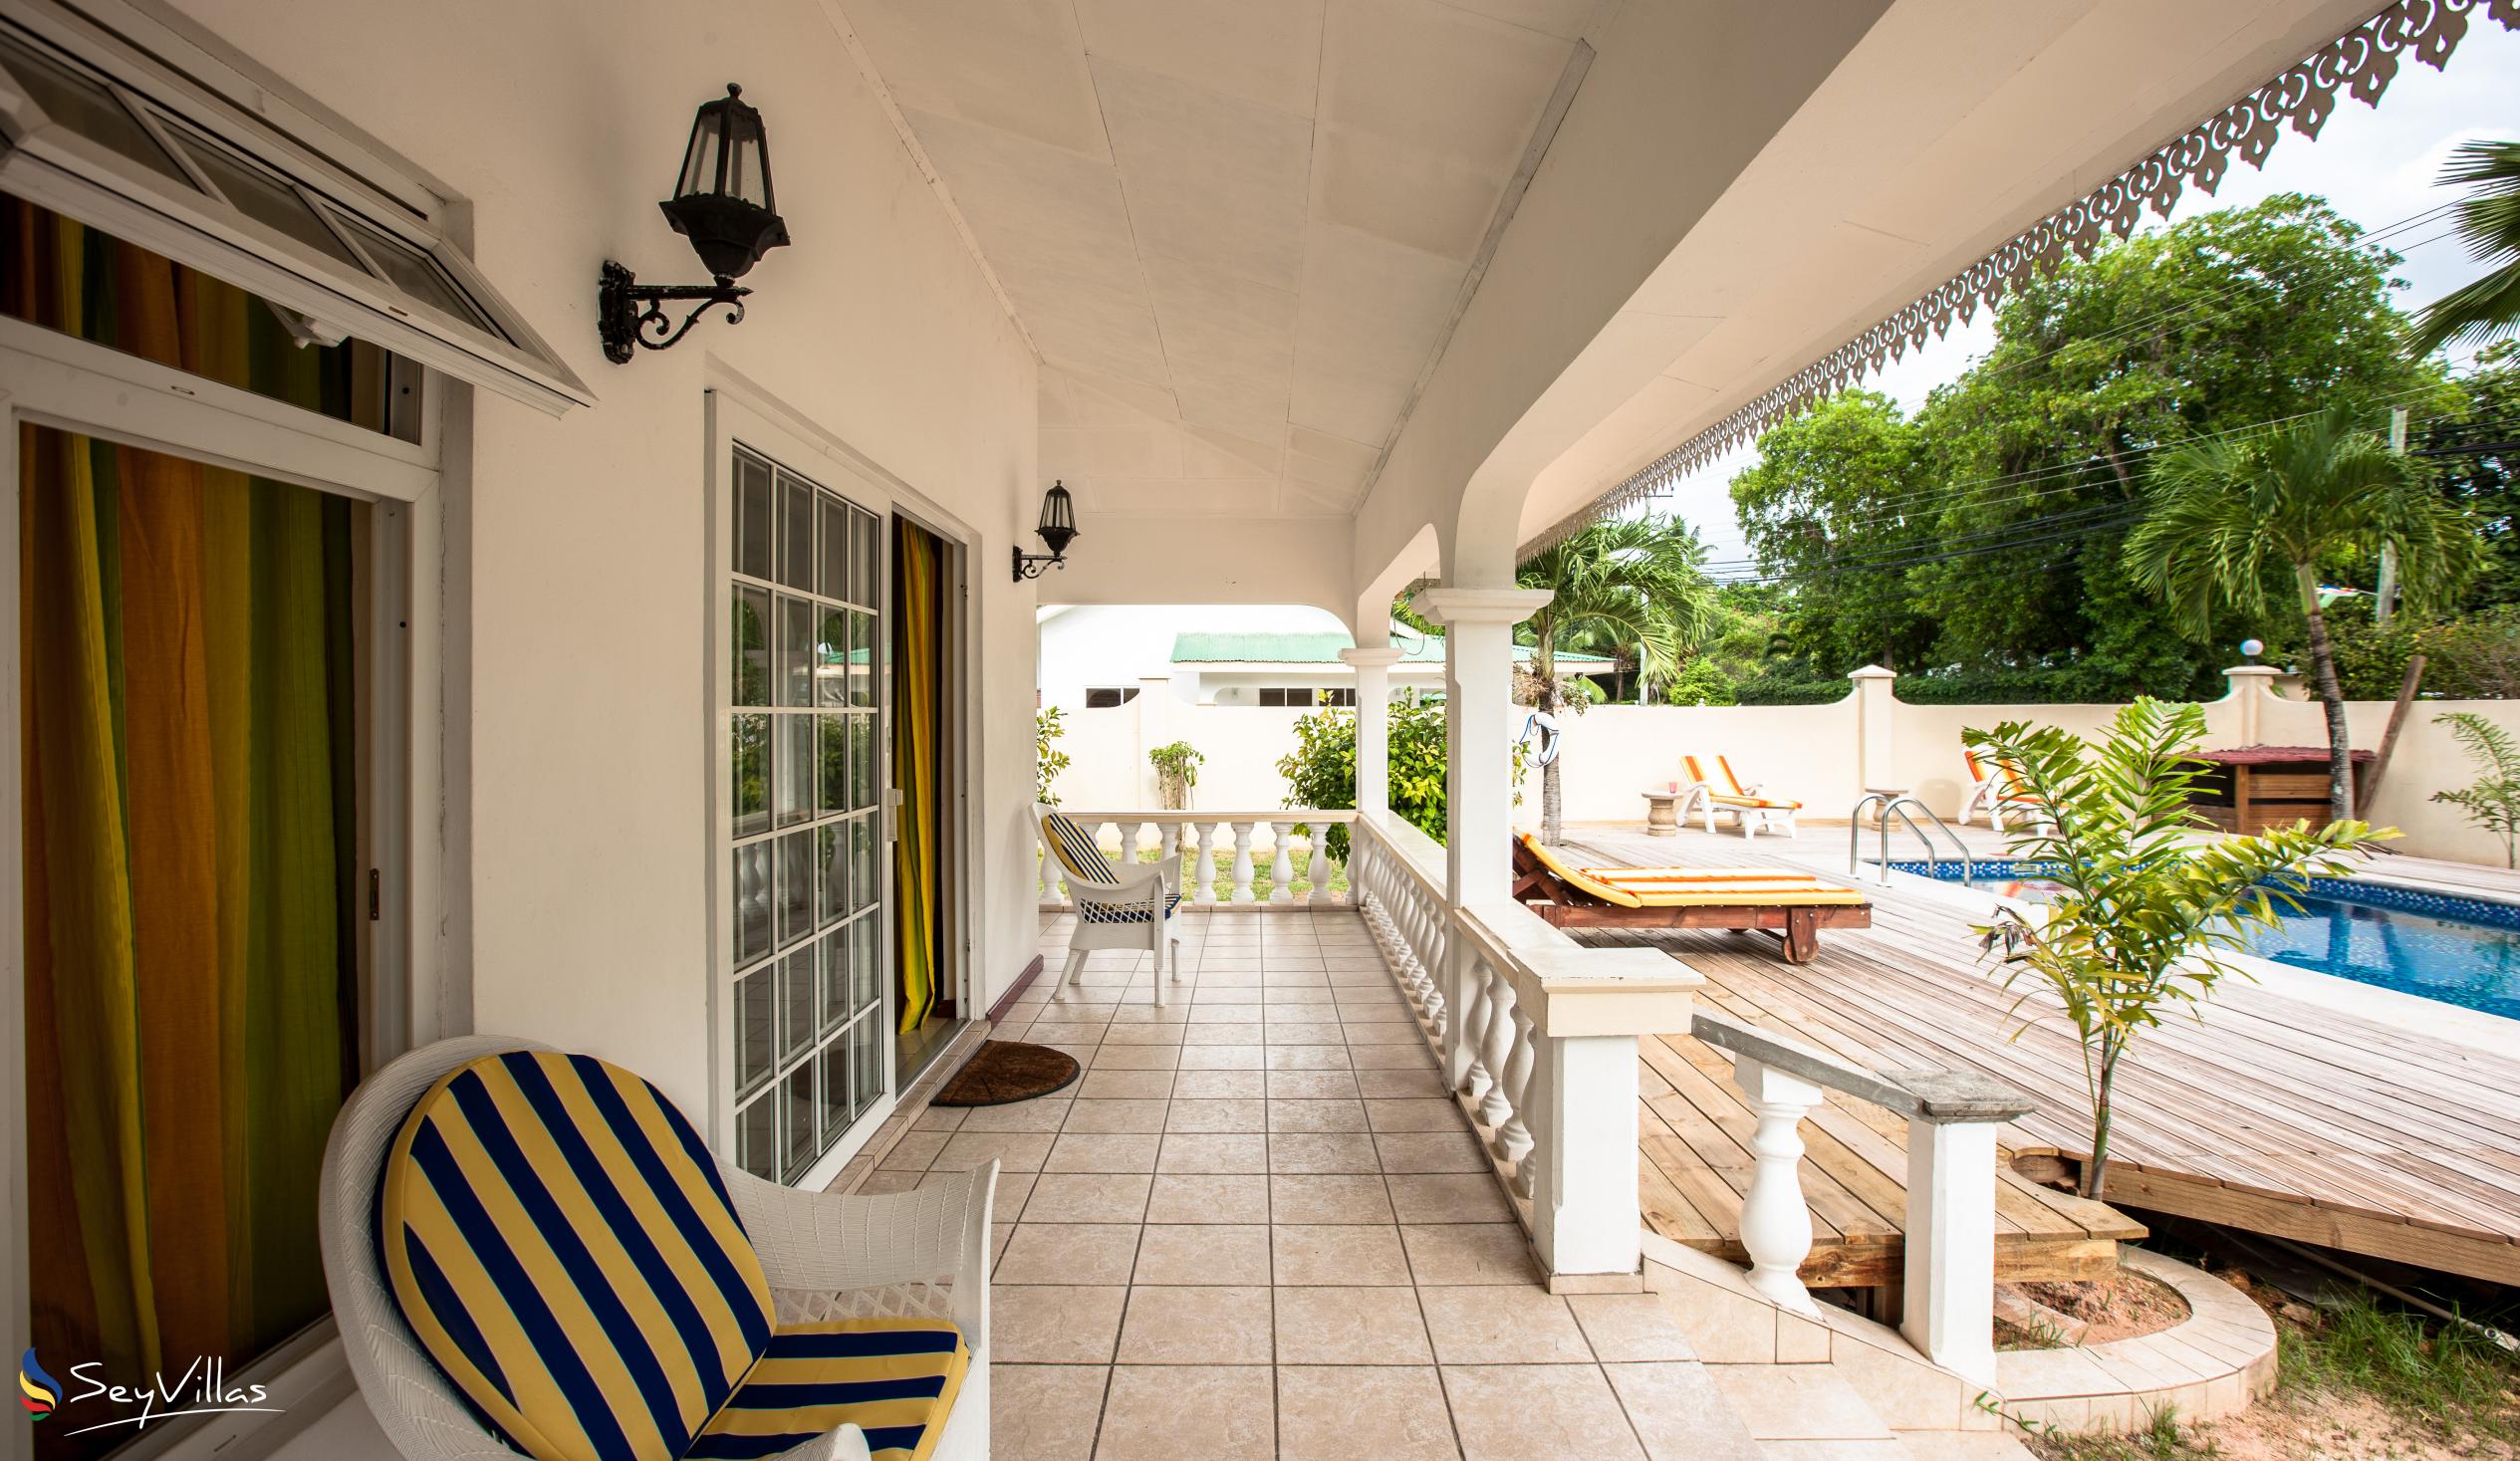 Photo 11: Villa Confort - Outdoor area - Praslin (Seychelles)